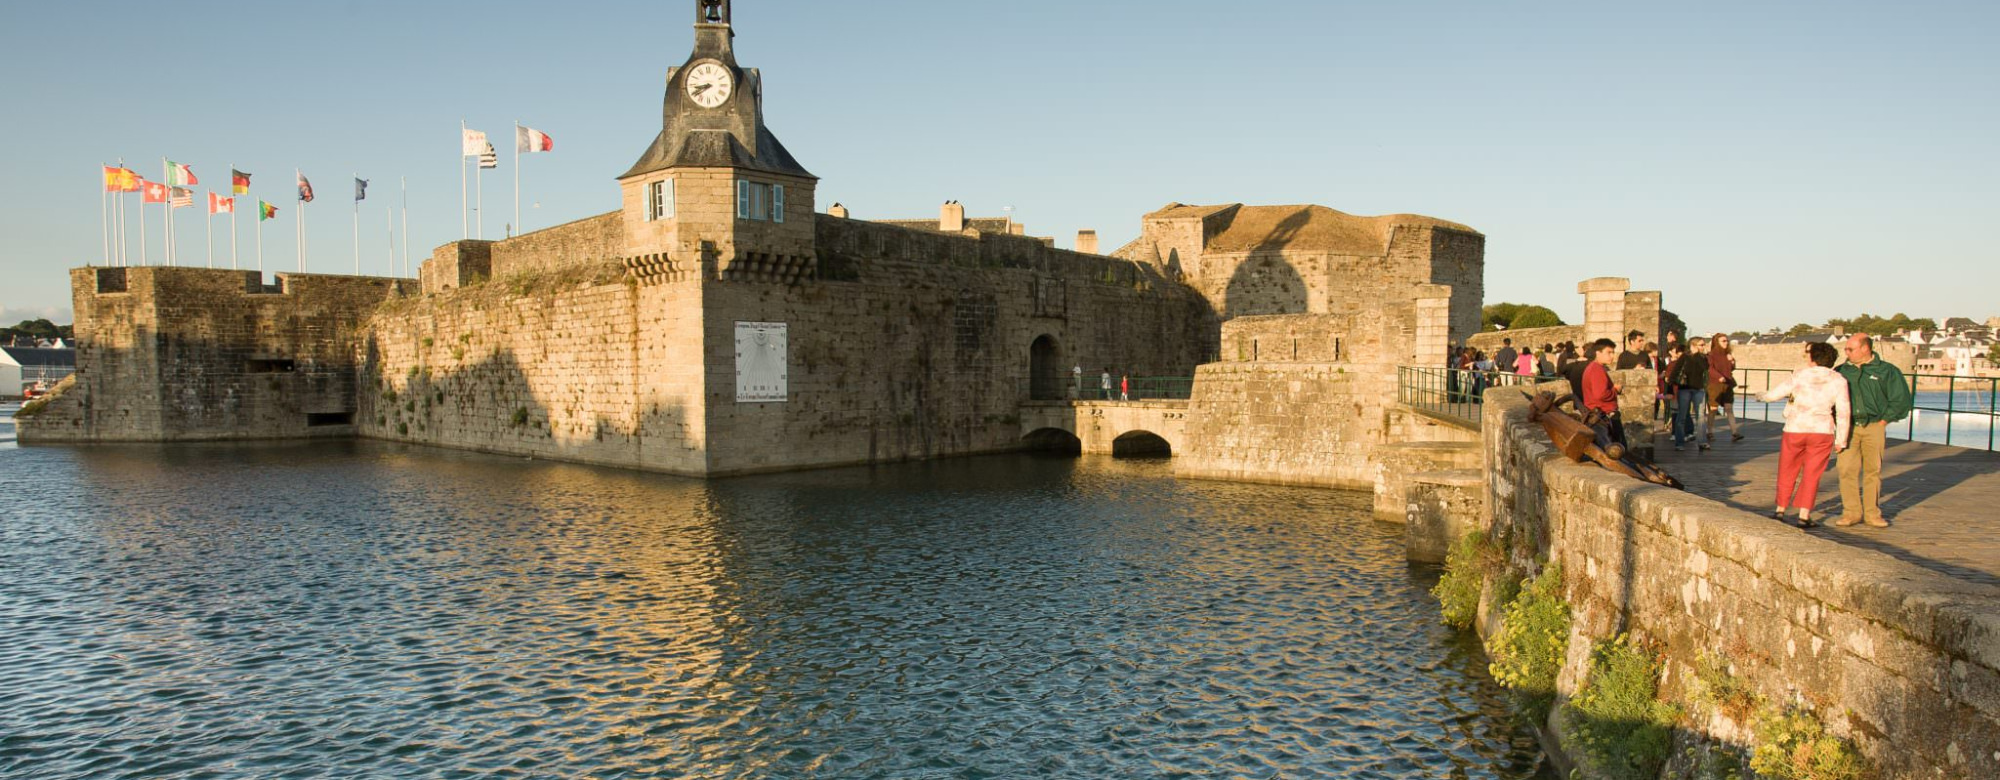 La ville close de Concarneau (Finistère Sud)